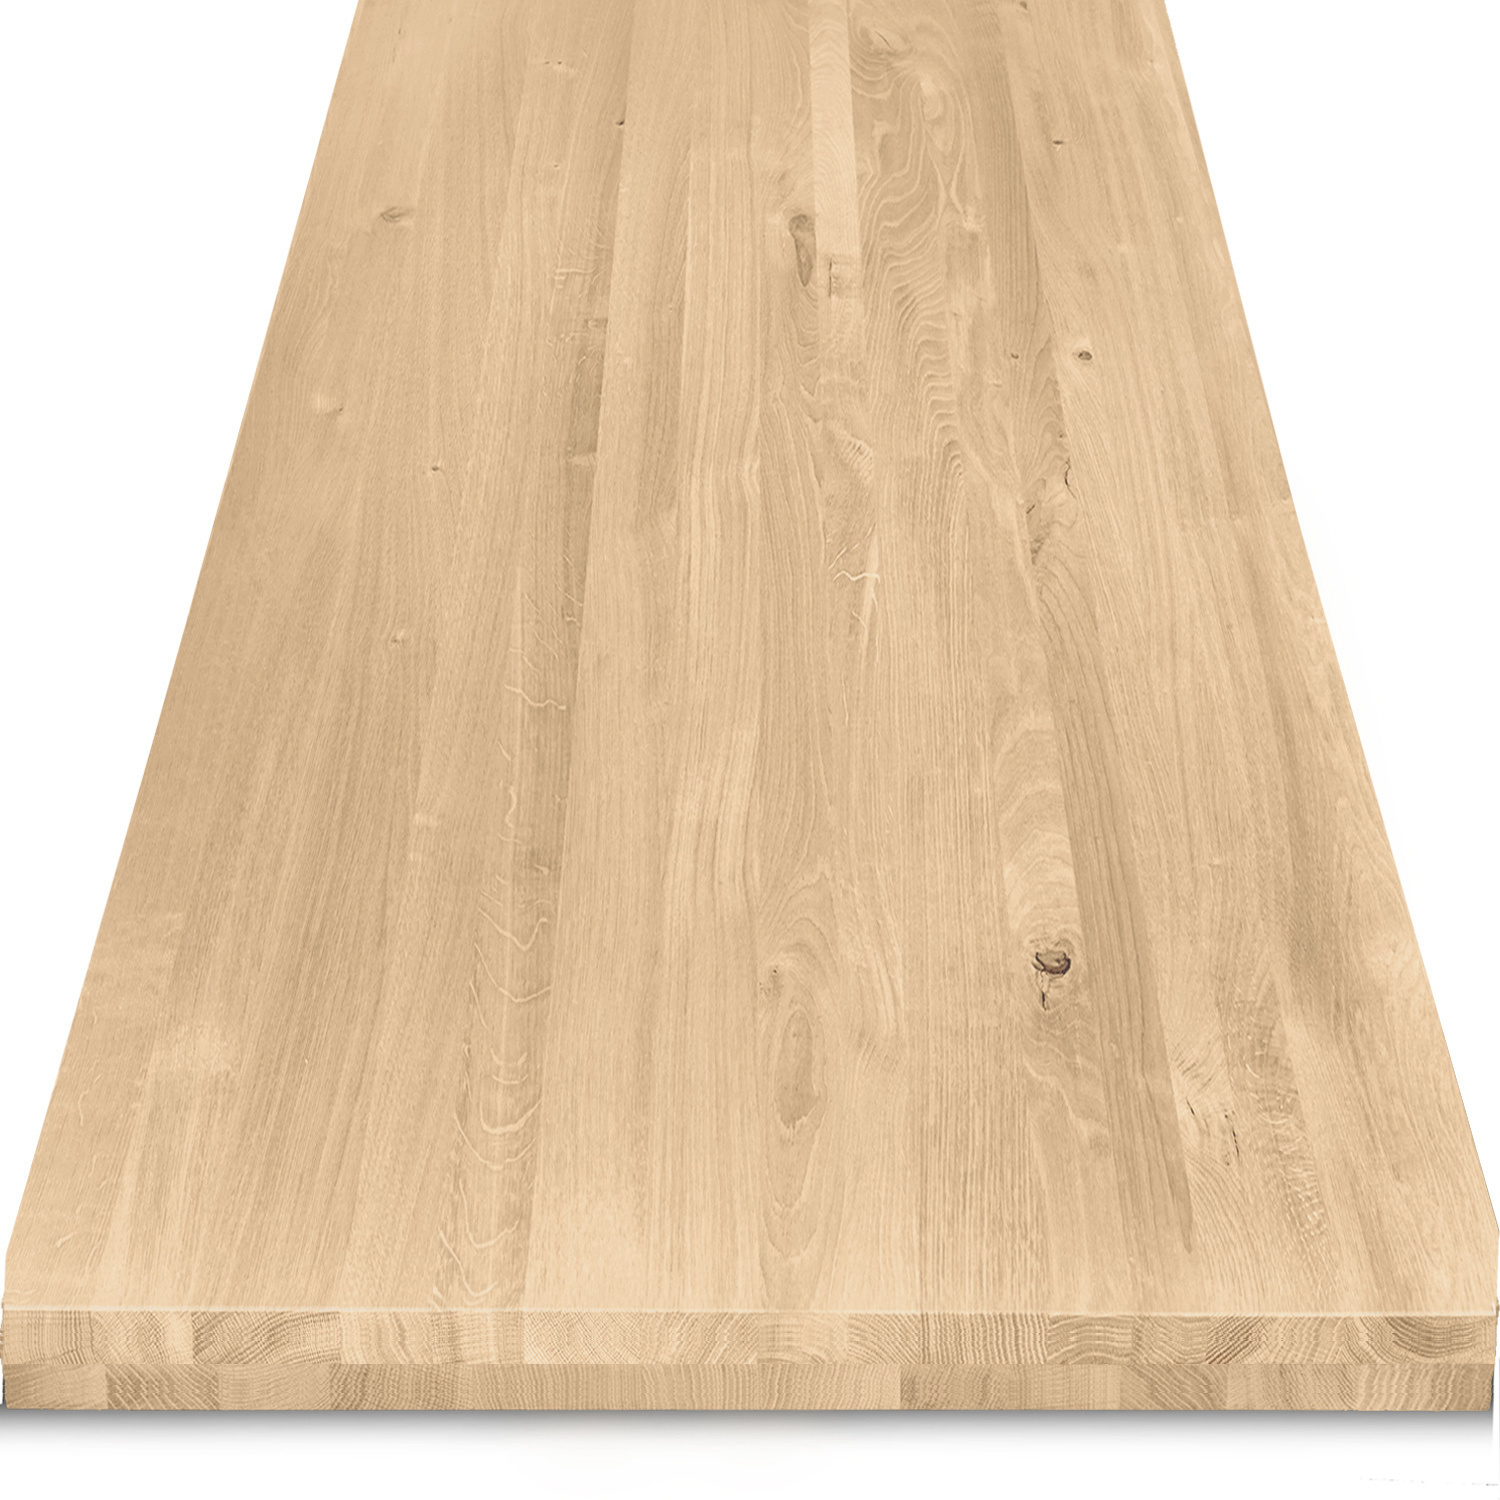  Tischplatte Eiche nach Maß - 6 cm dick (2-lagig) - Eichenholz rustikal - Eiche Tischplatte massiv - verleimt & künstlich getrocknet (HF 8-12%) - 50-120x50-300 cm